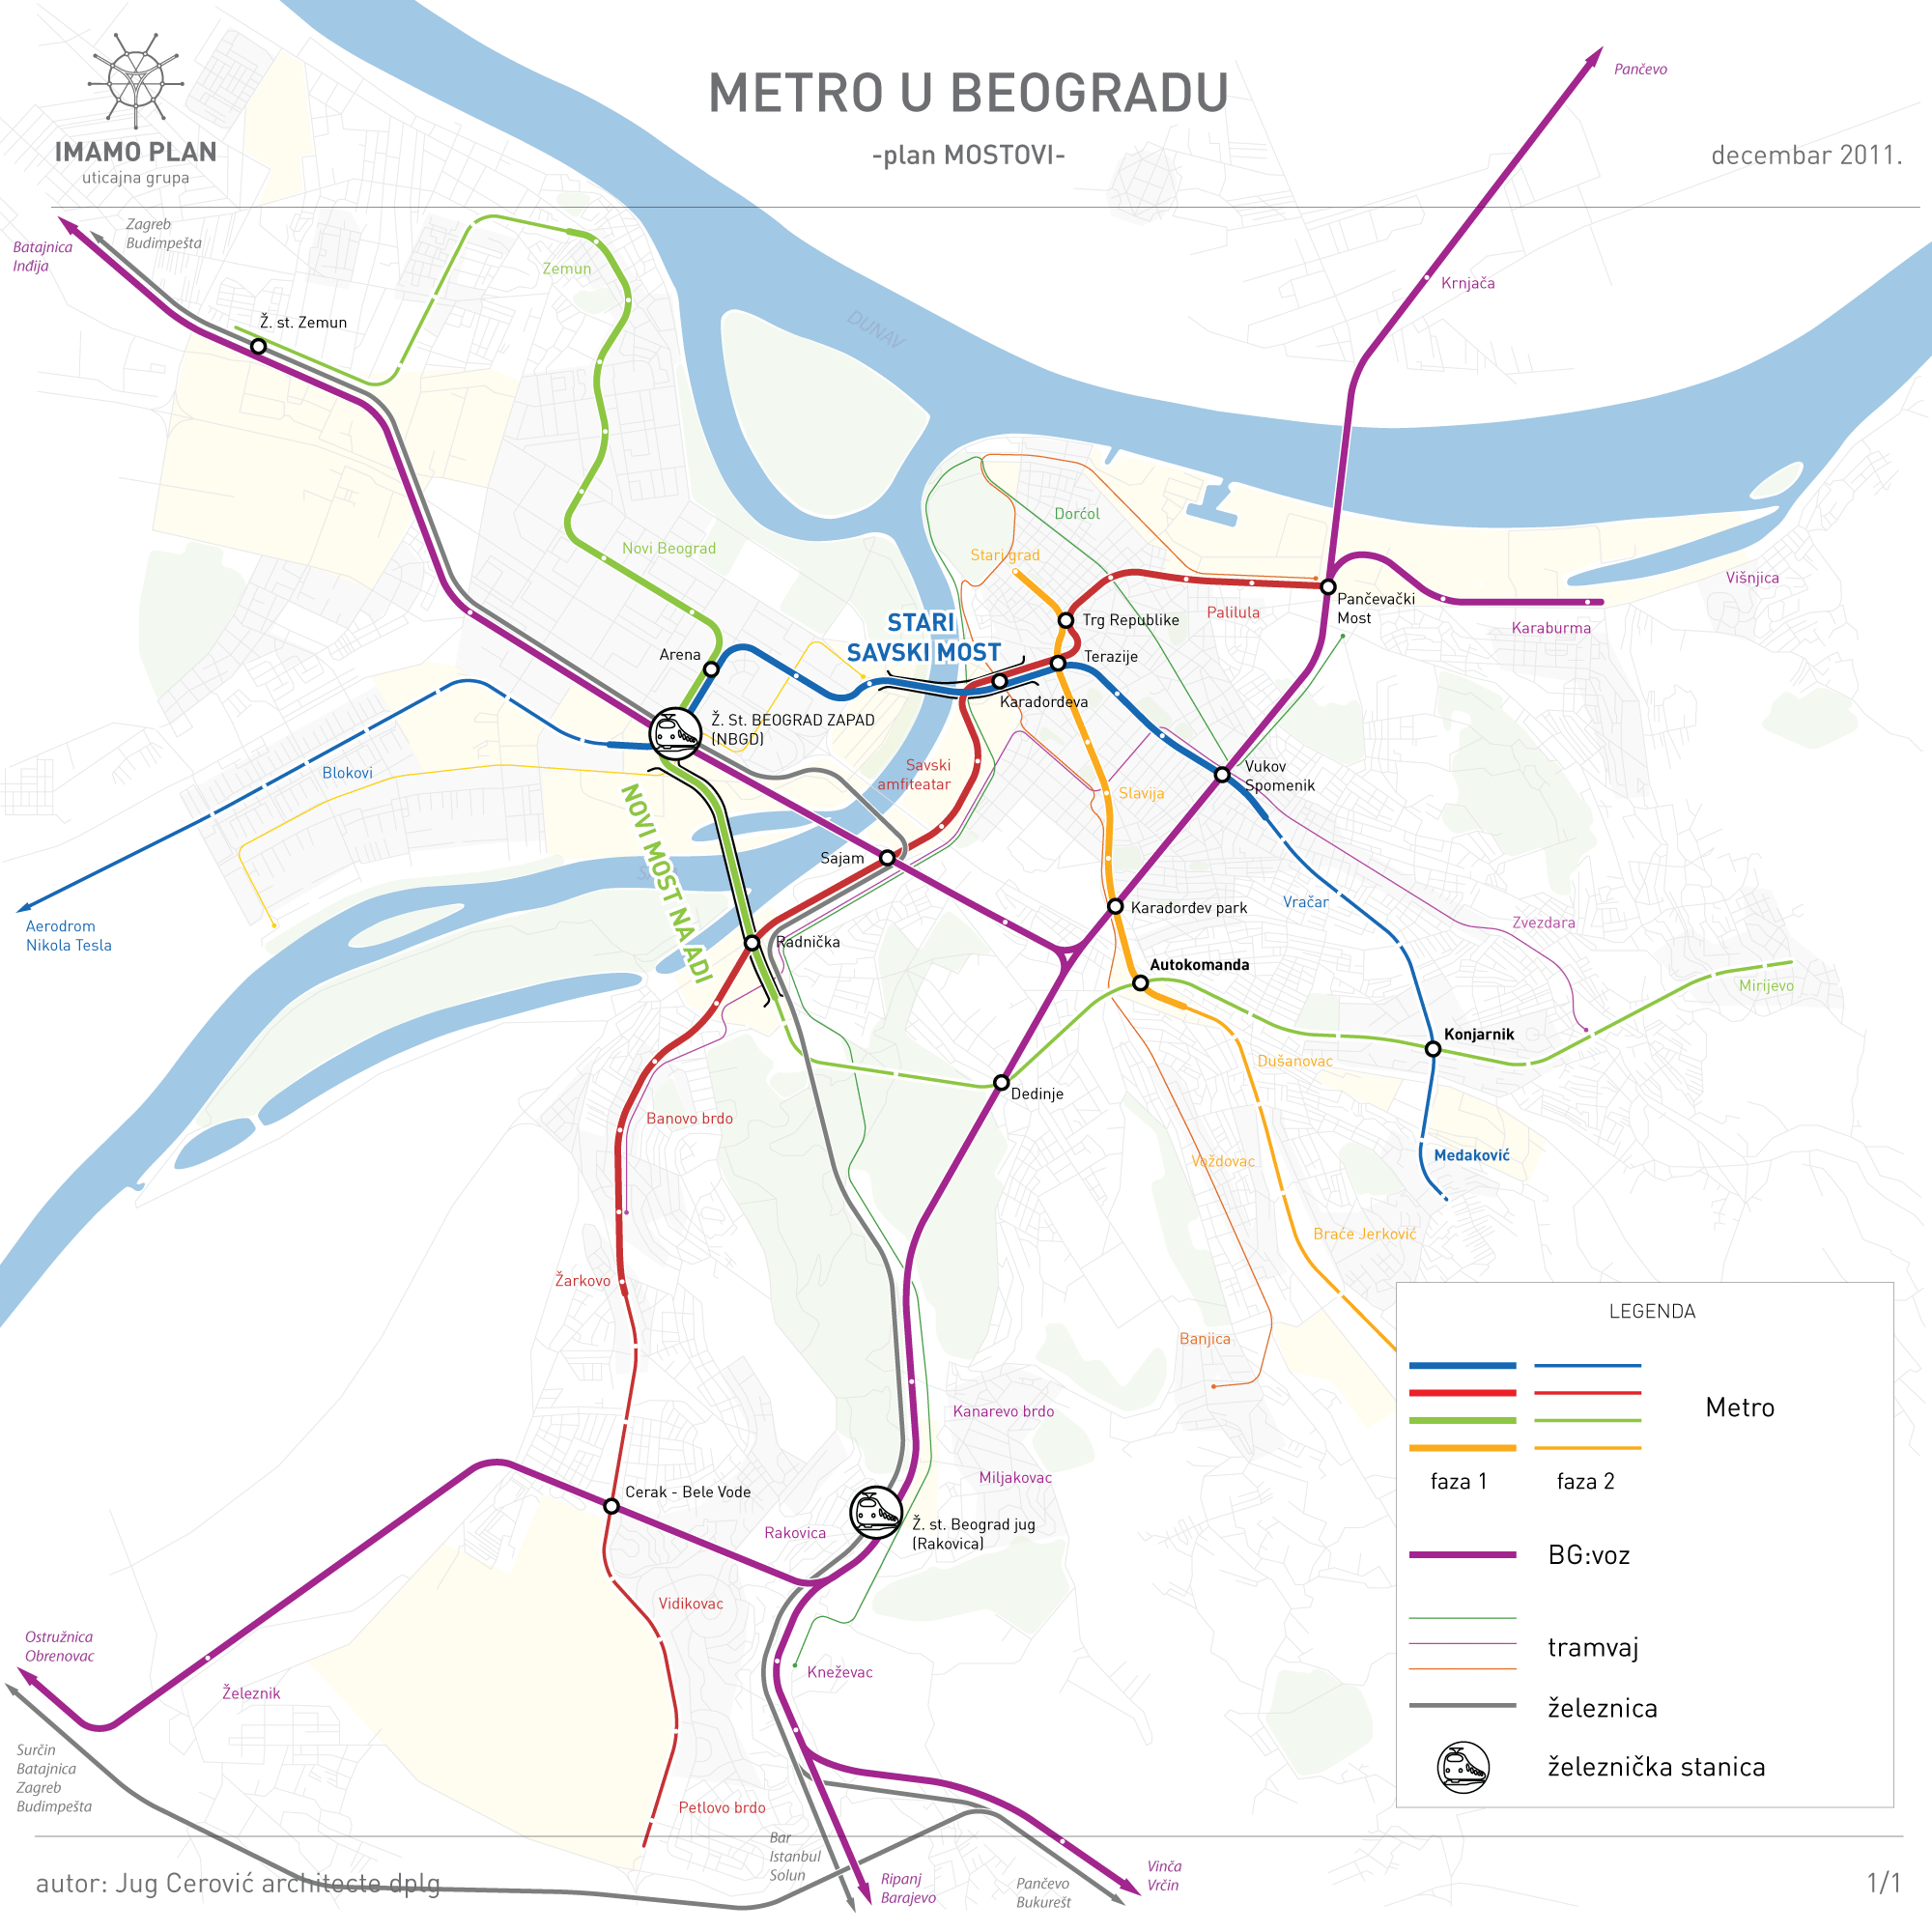 63_bgd-metro-plan-mostovi.png